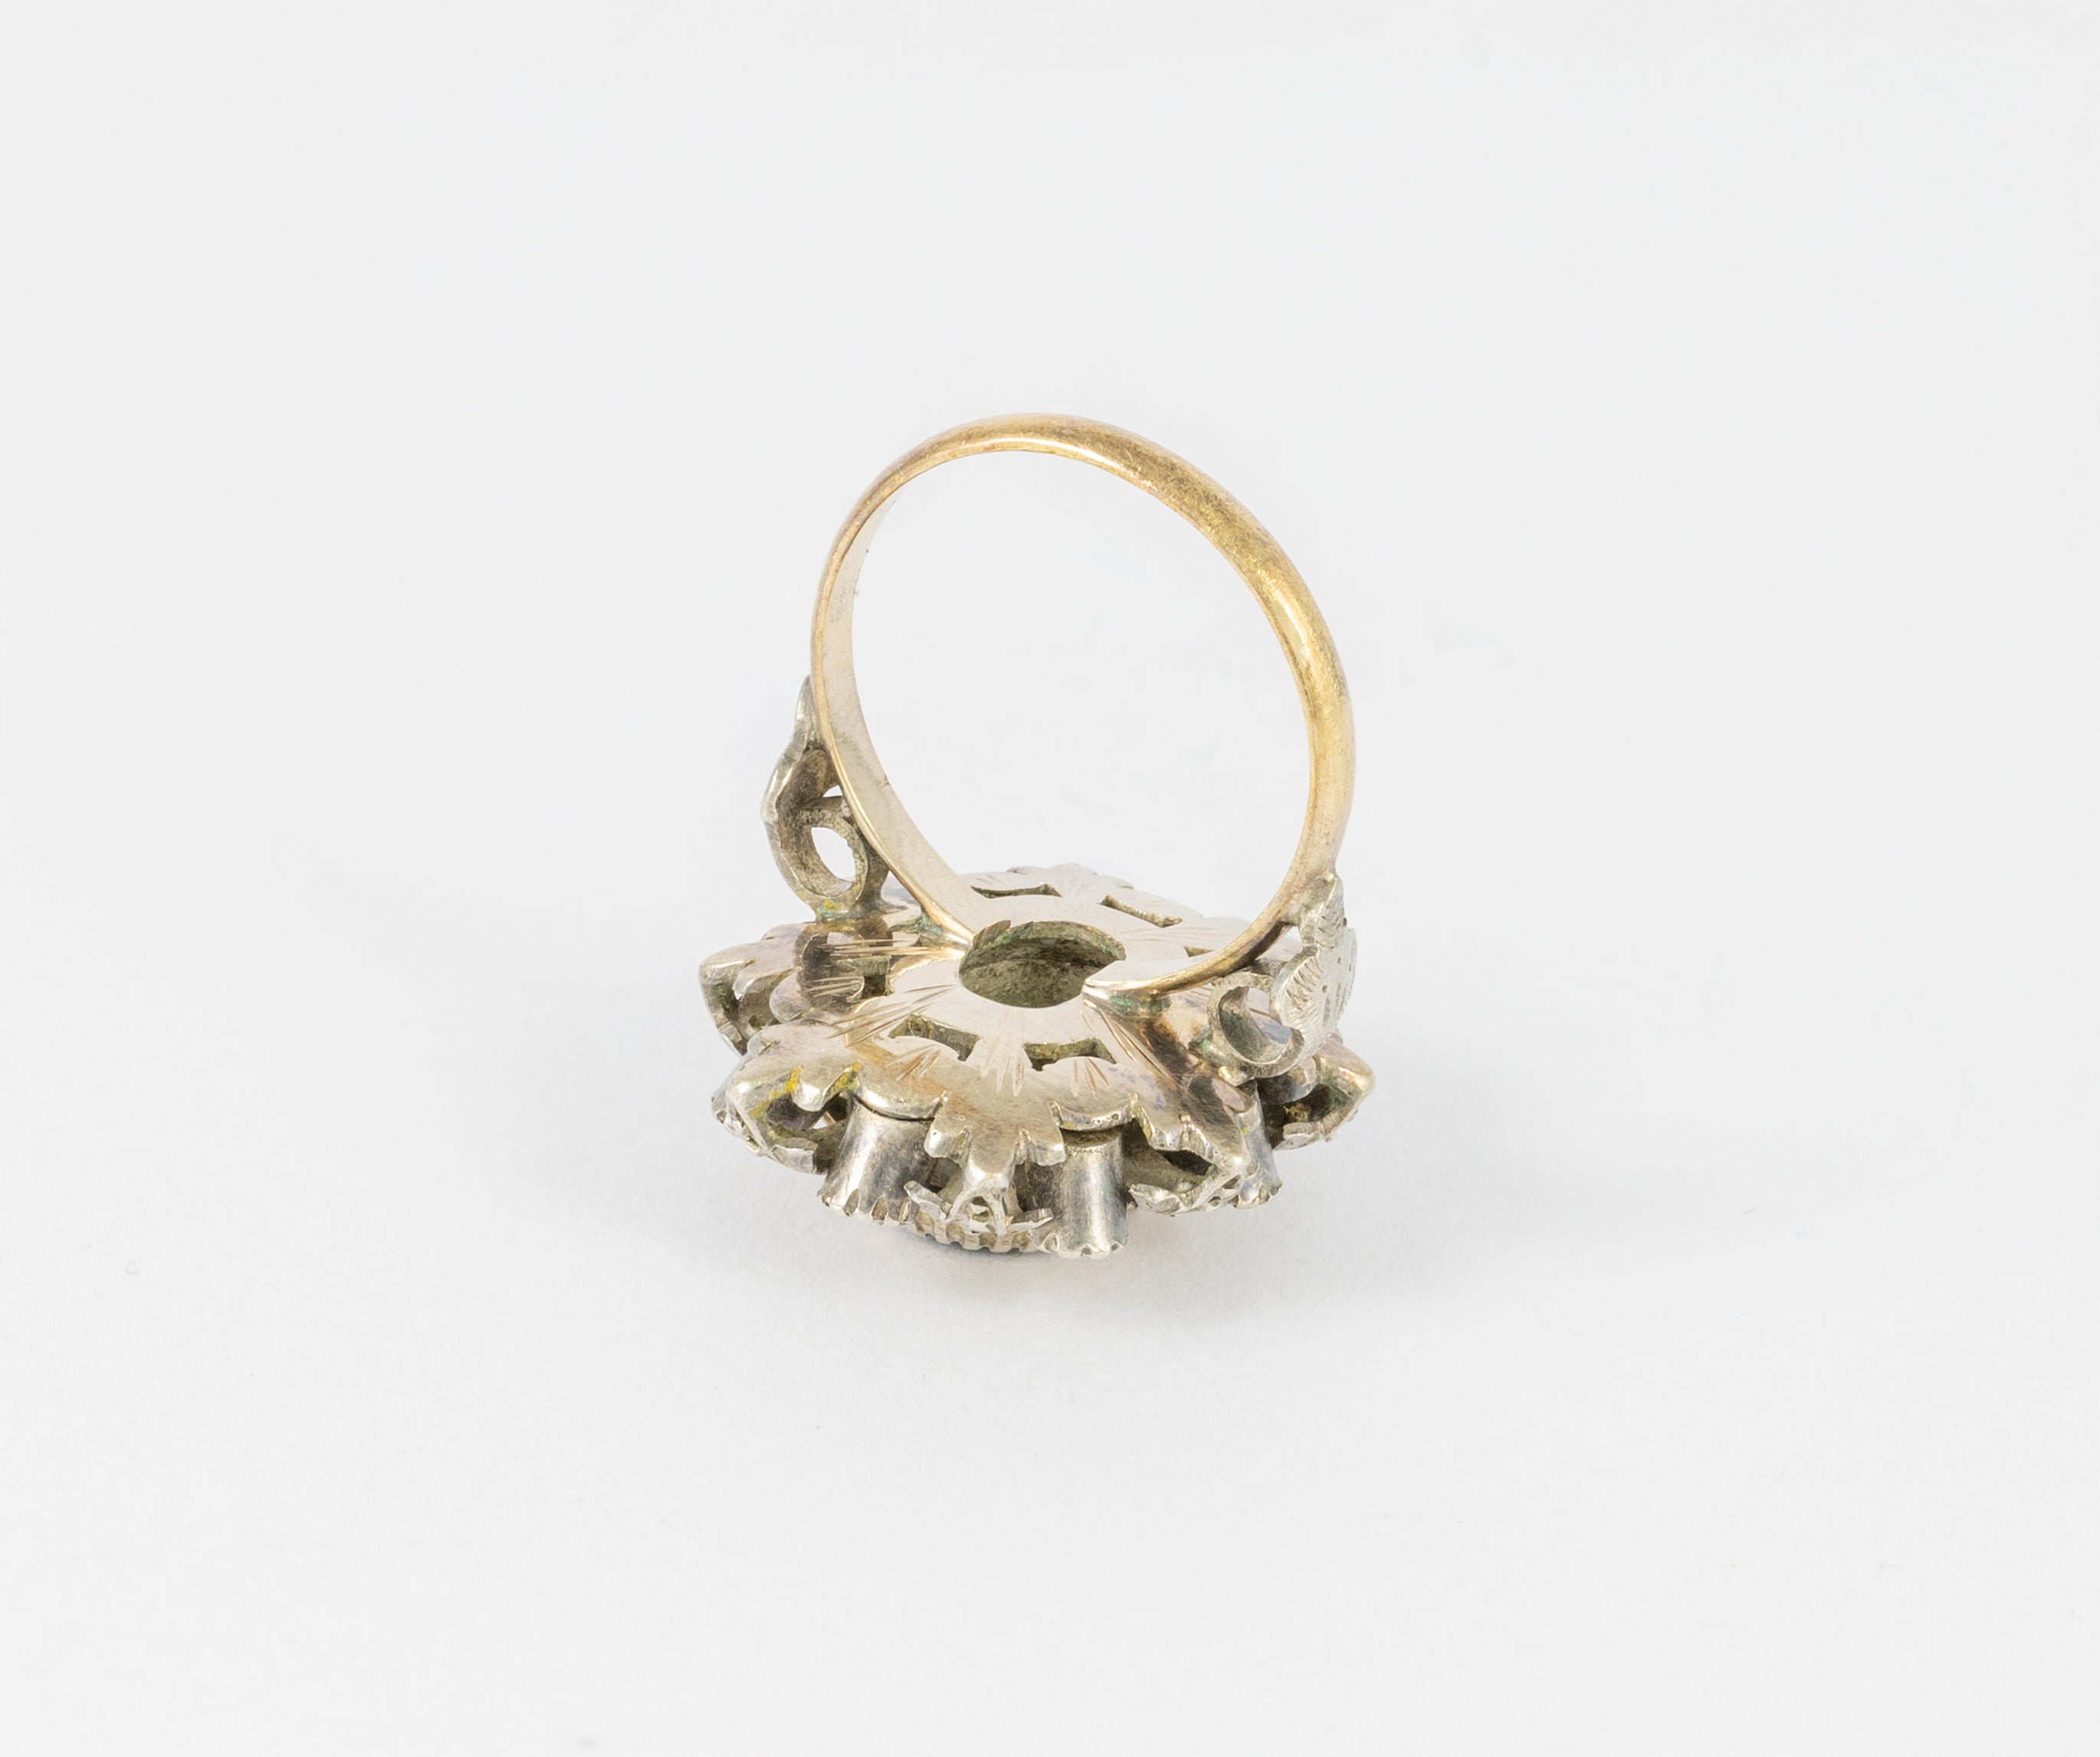 Conjunto broche pendientes y anillo en oro amarillo 18k y plata